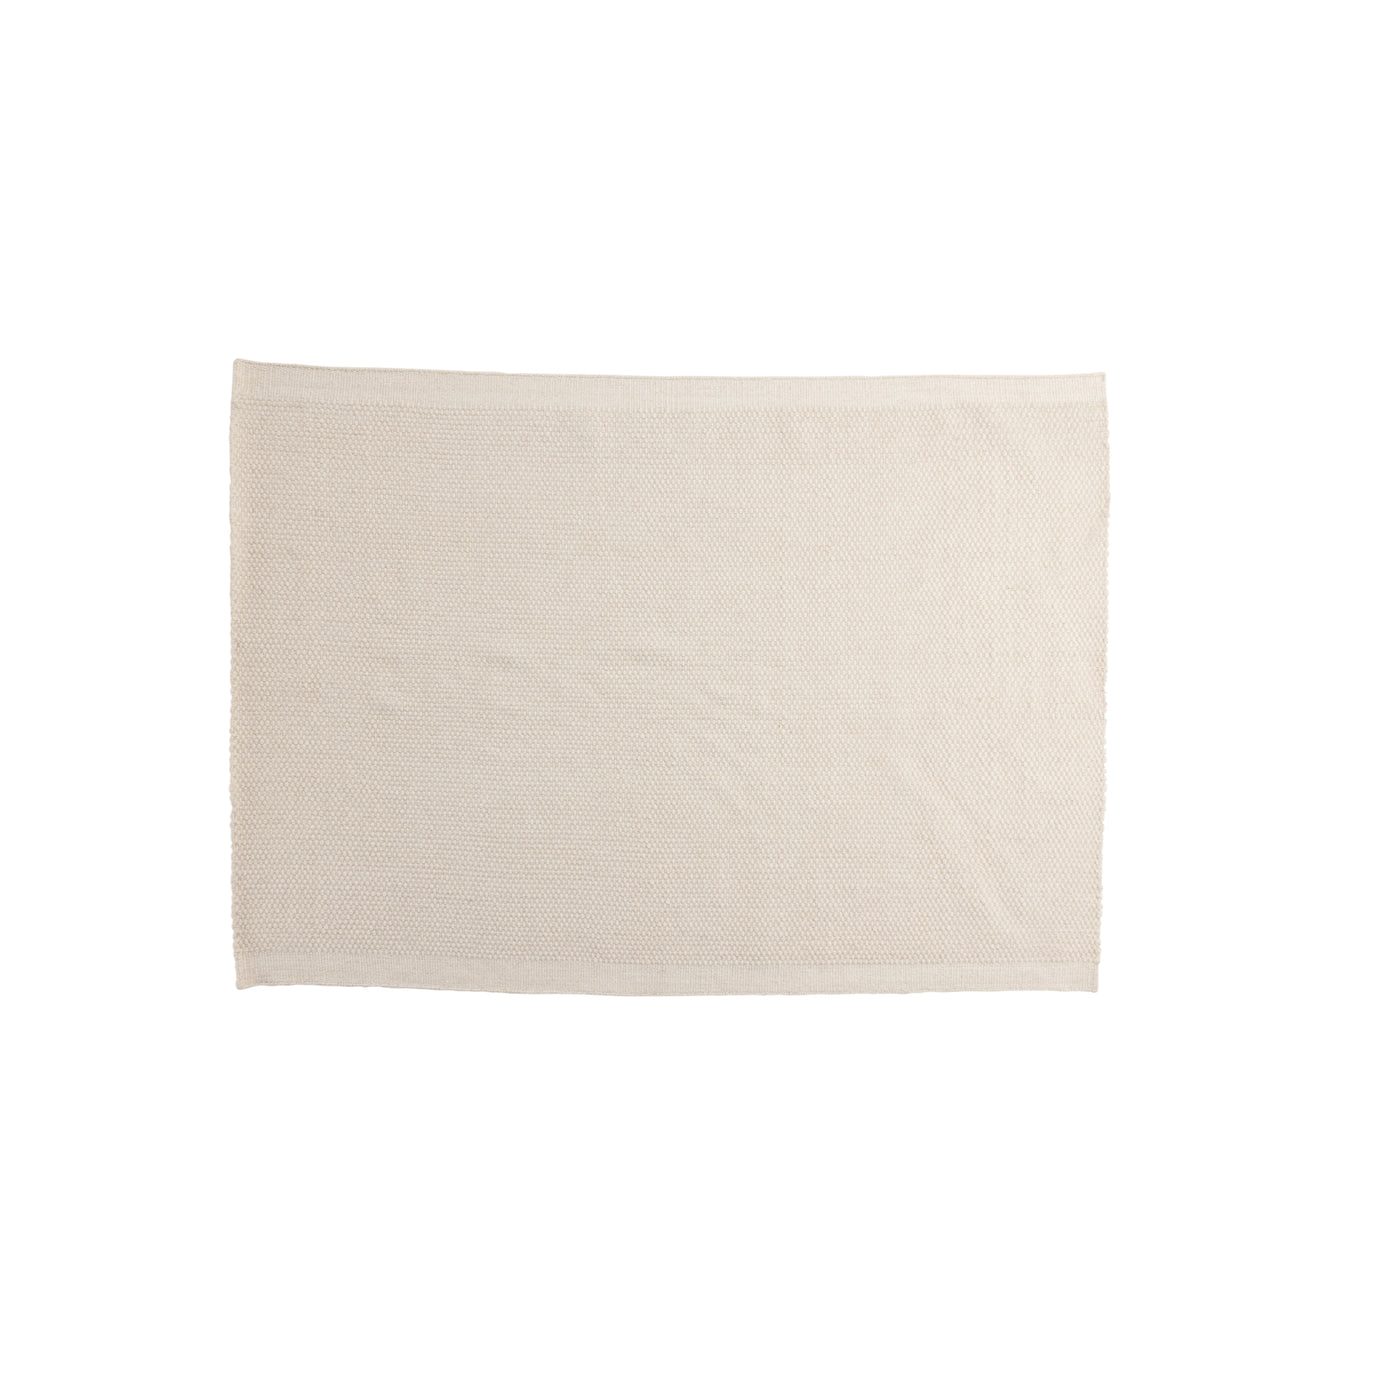 Ratangarh-Wolle und Baumwolle – 230 x 160 – rechteckig – gebrochenes Weiß